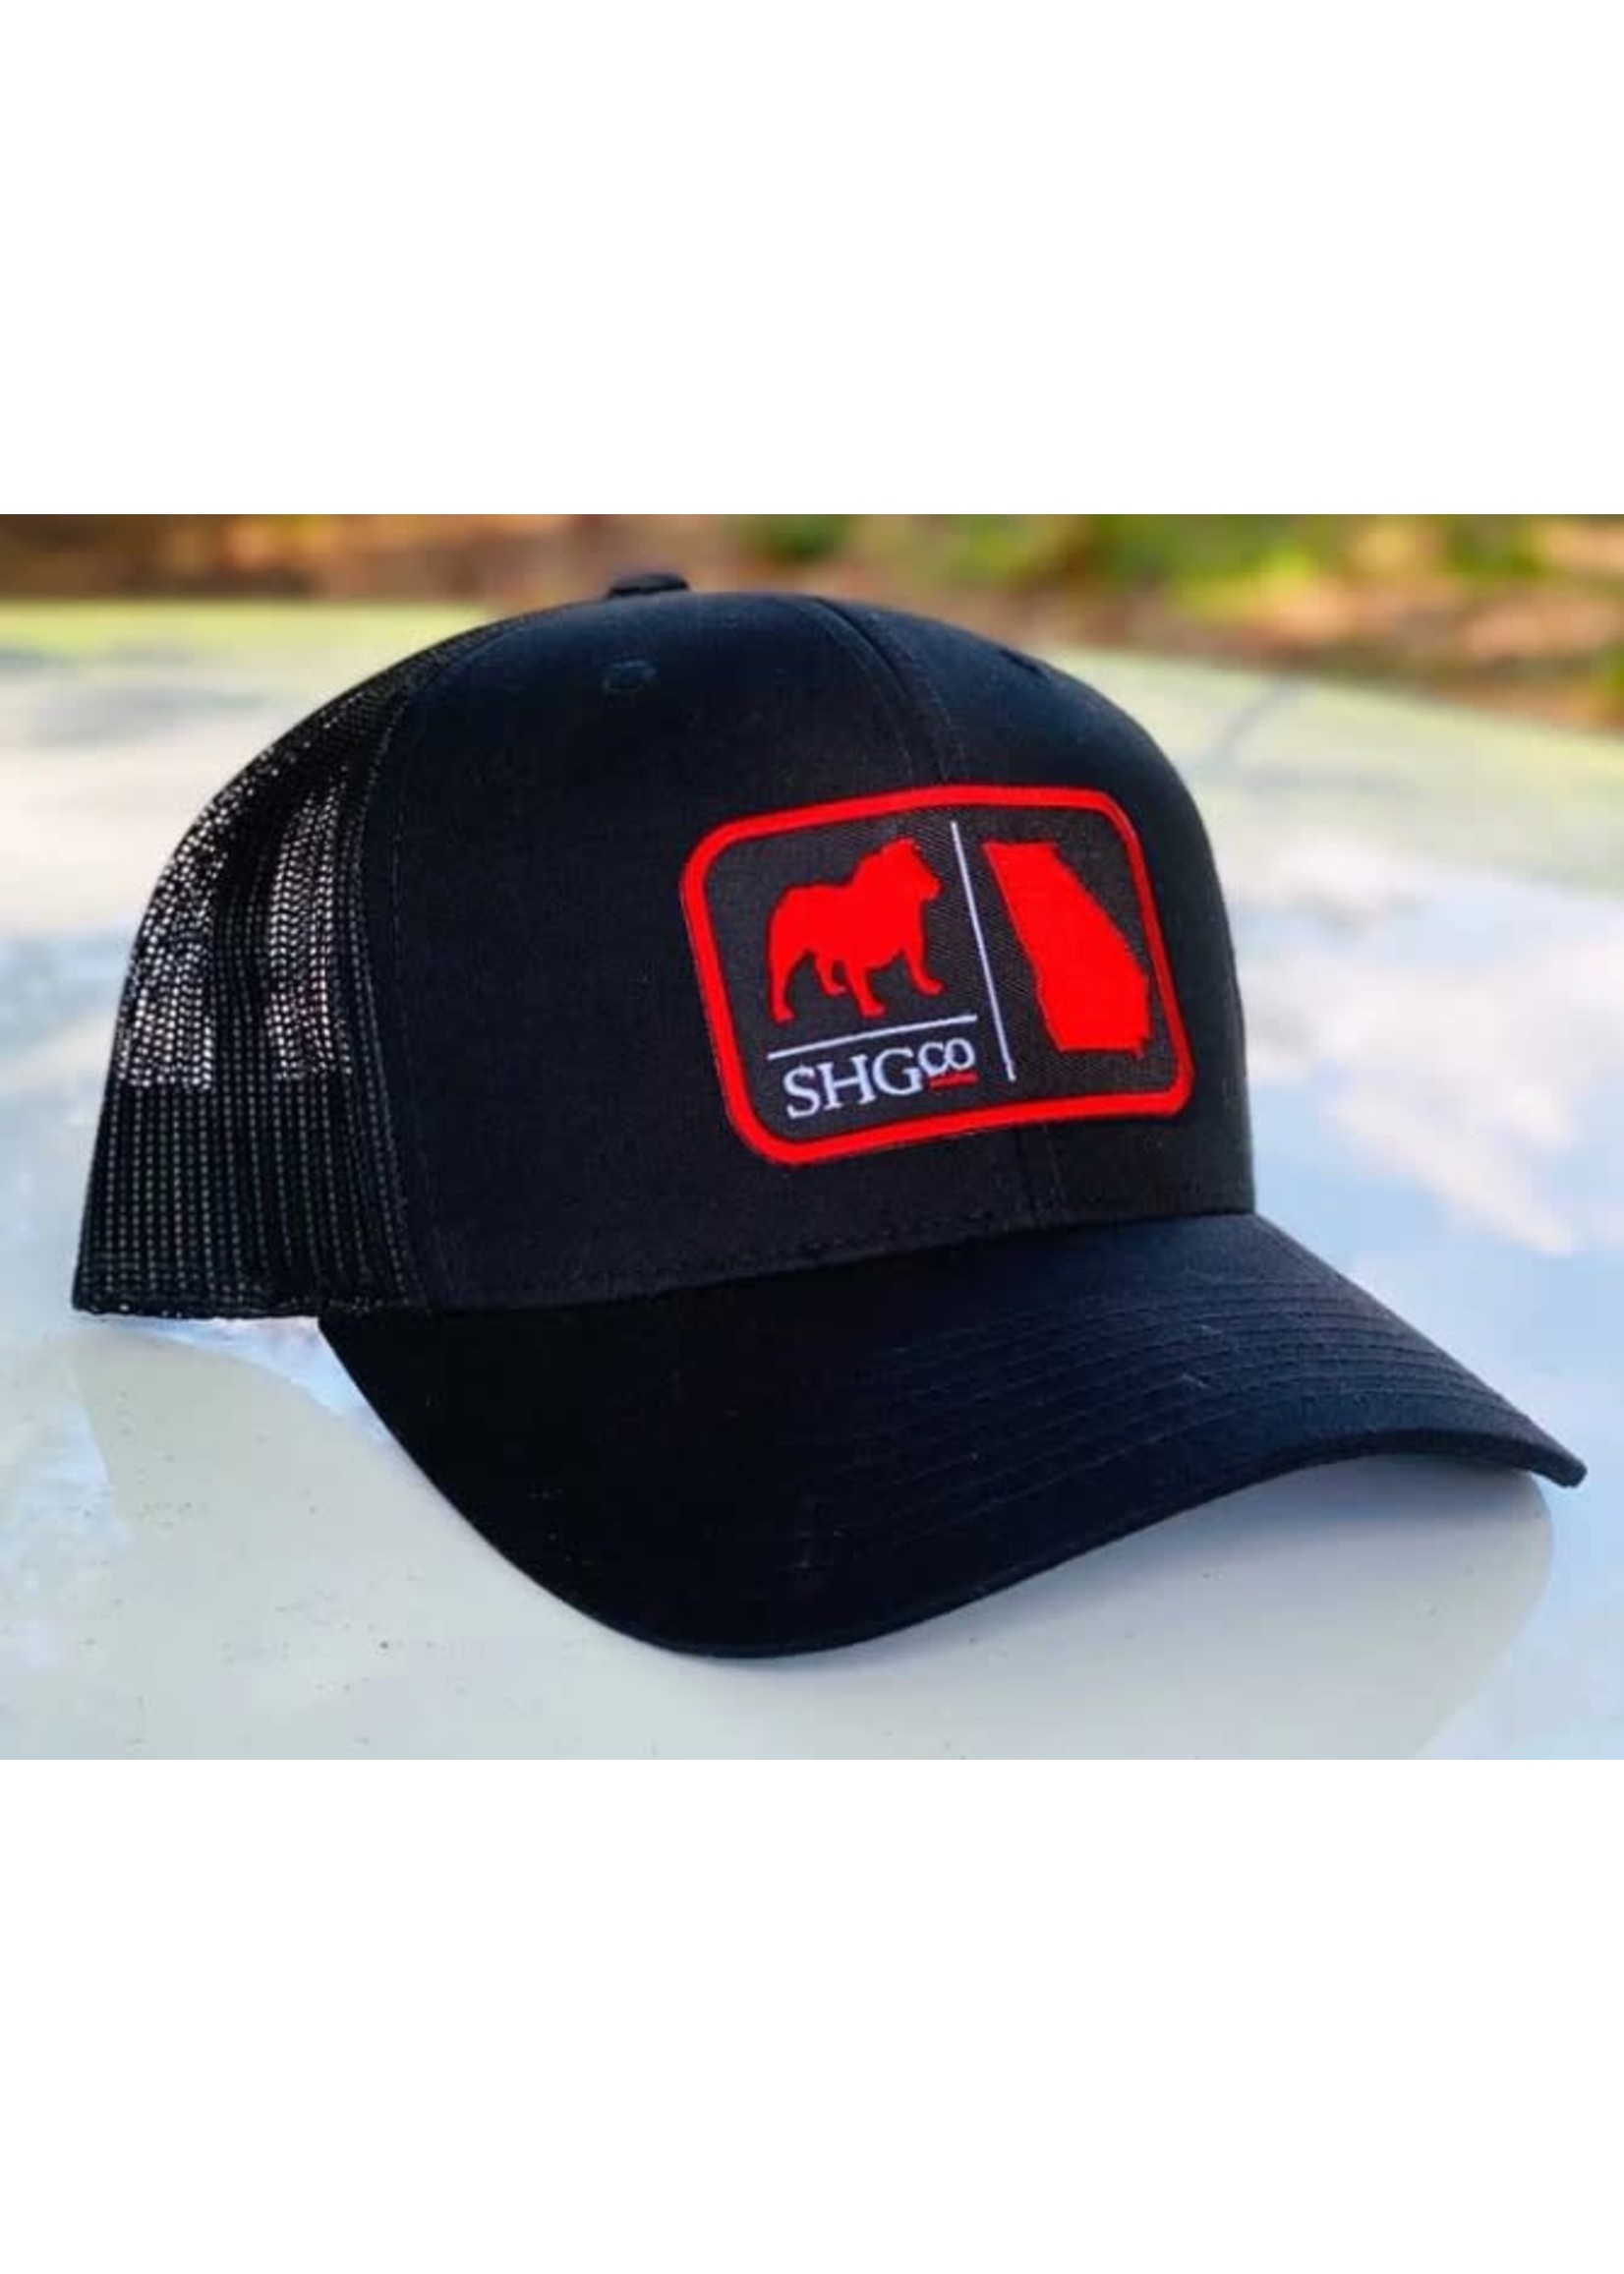 State Homegrown Georgia Dawg Hat